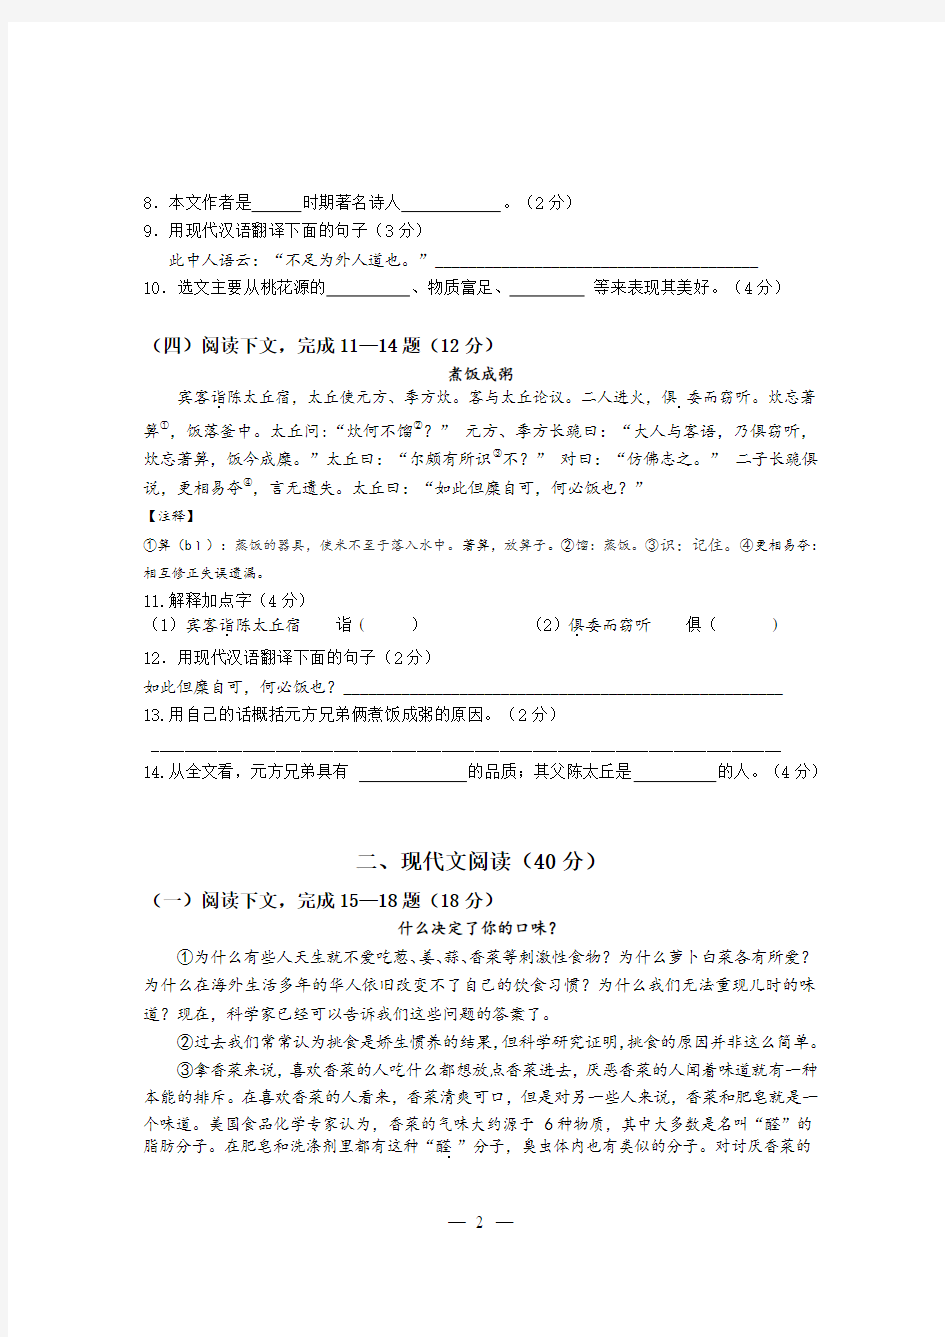 2018年1月上海市初三语文一模试卷;杨浦卷(含答案)